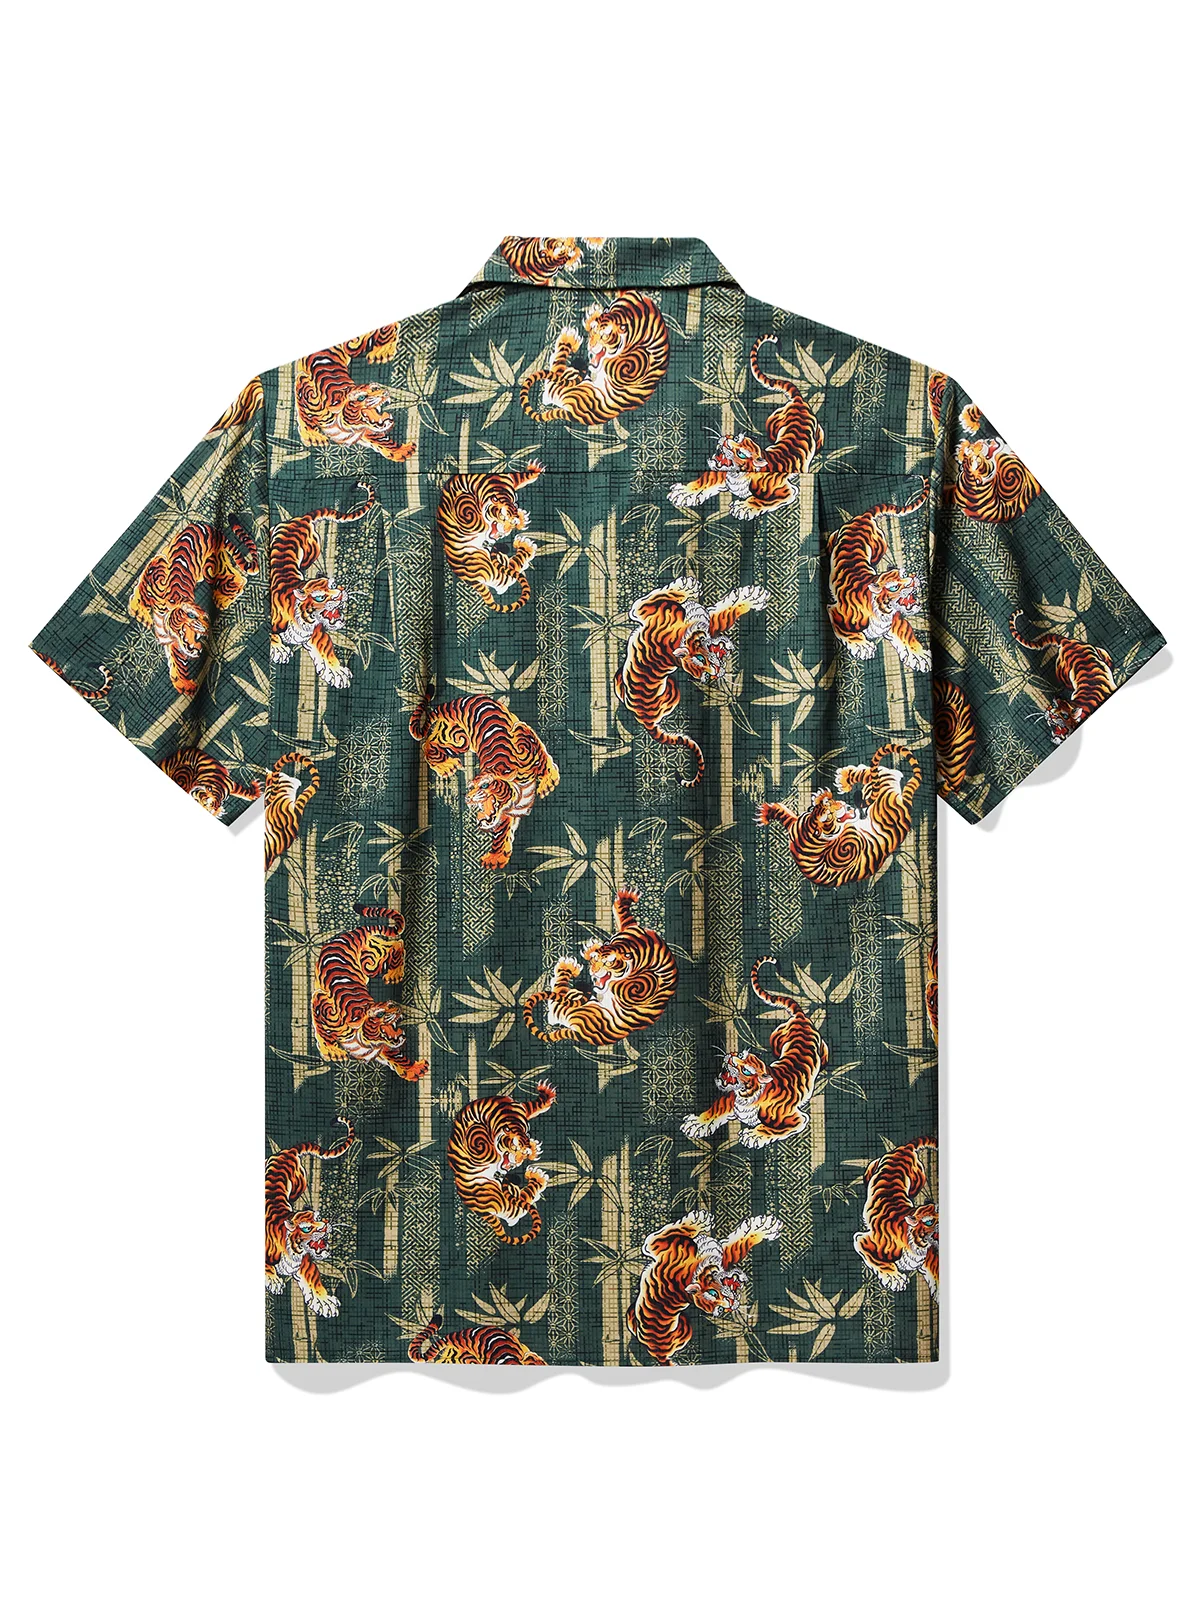 Royaura® x David Bailey Vintage Japanese Bamboo Leaves Tiger Men's Hawaiian Shirt Stretch Pocket Camp Shirt Big Tall